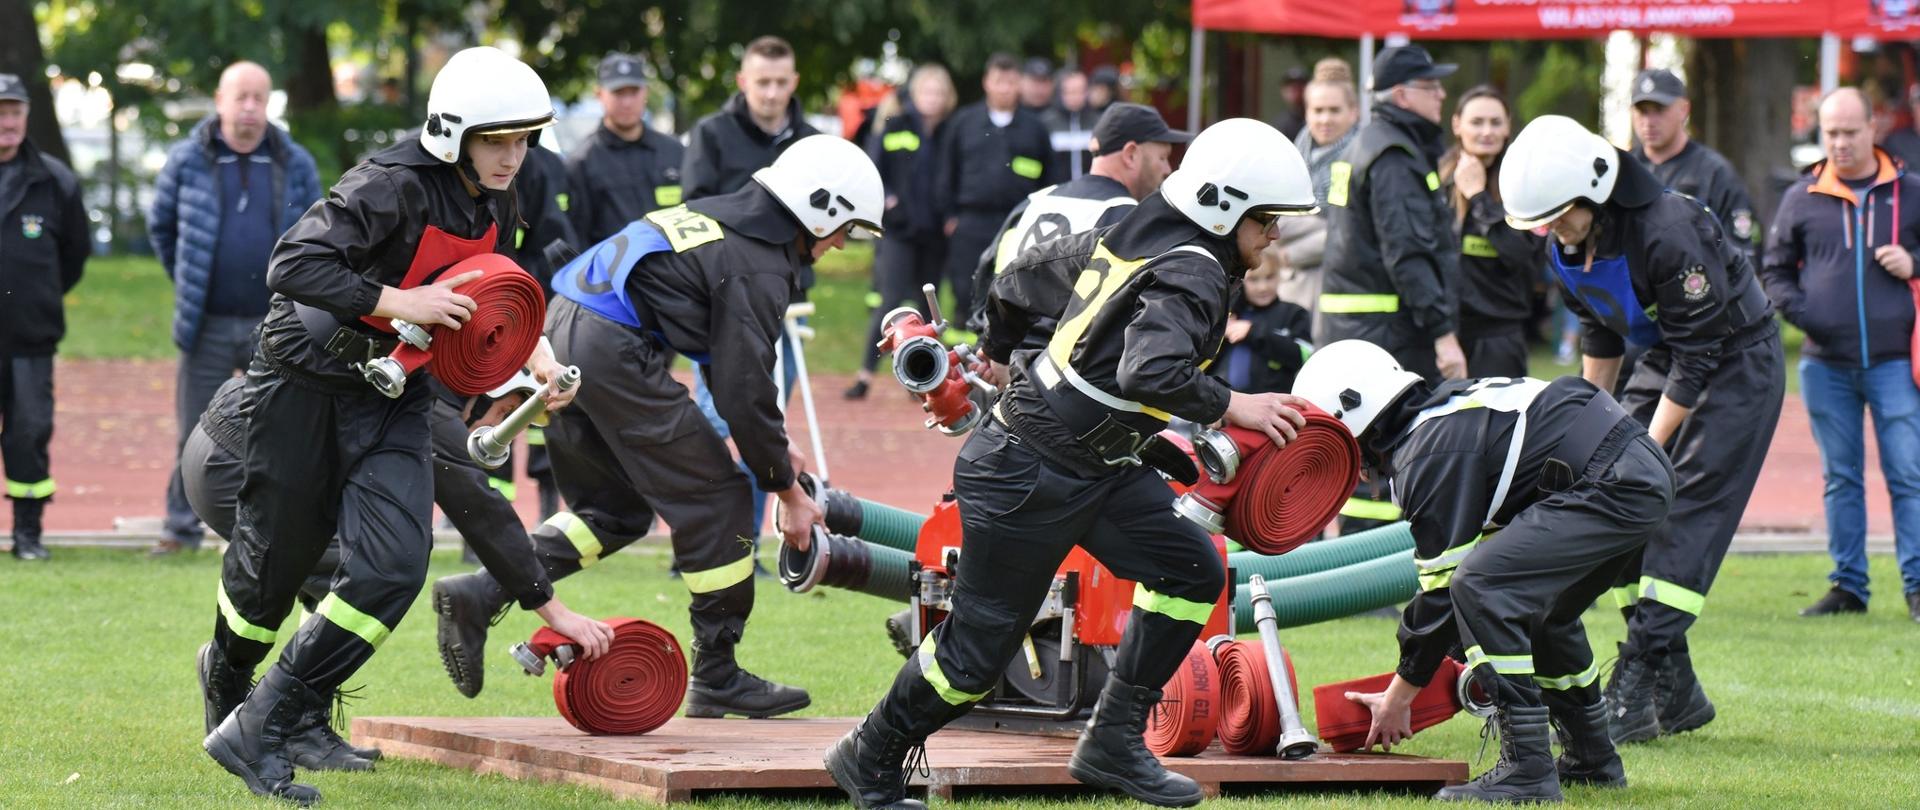 Na zdjęciu widać strażaków ubranych umundurowanie koszarowe z emblematami na klatce. Strażacy wykonują ćwiczenie bojowe jedną z konkurencji w zawodach. 